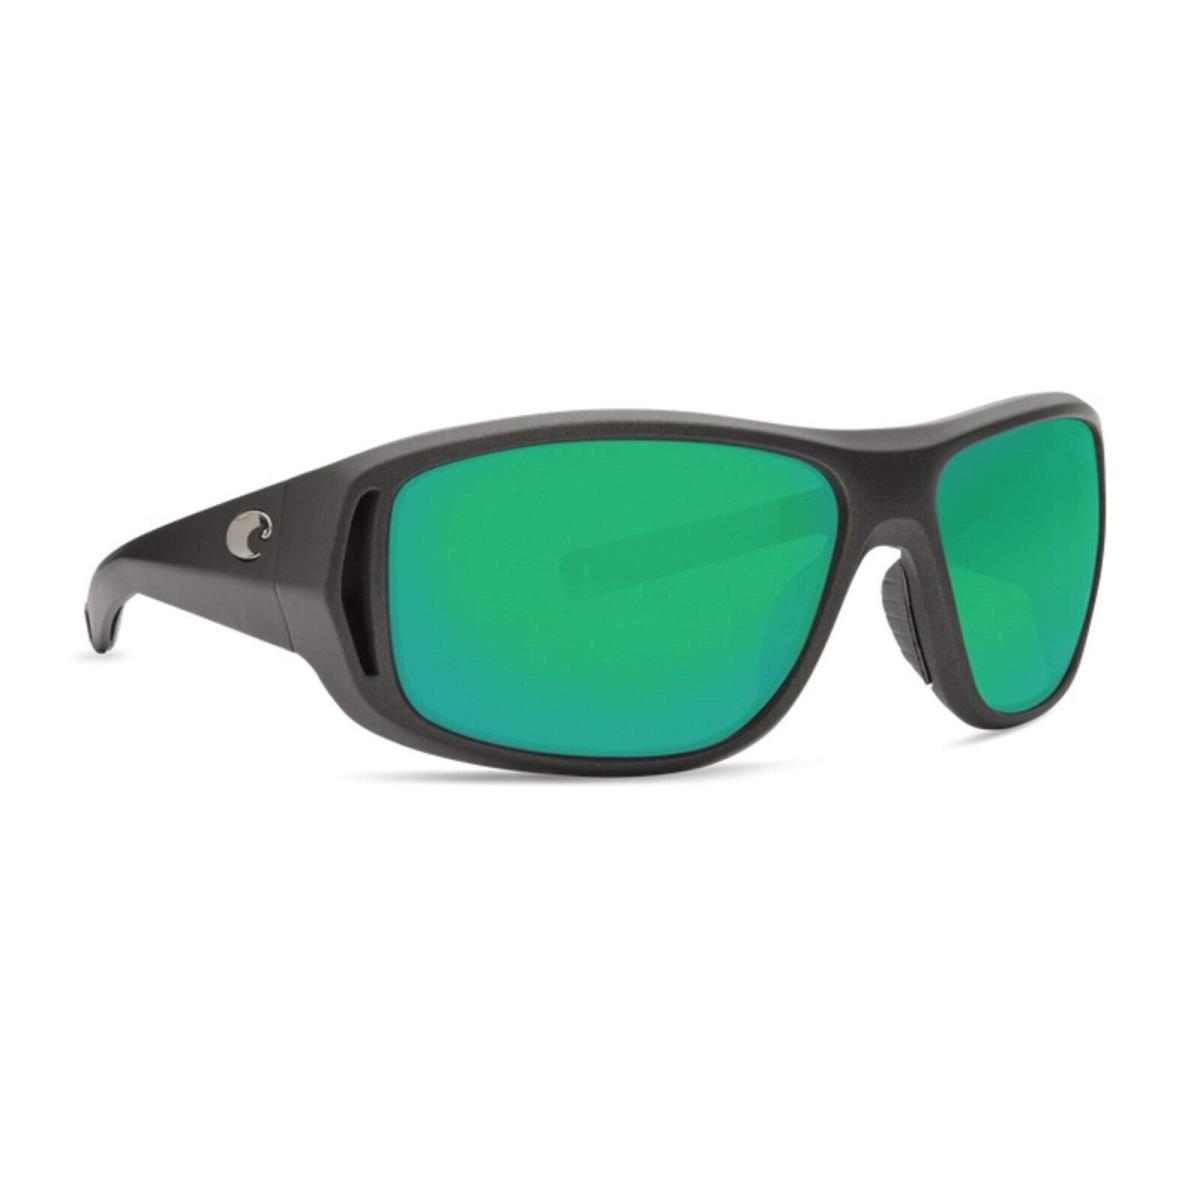 Costa Del Mar Montauk Sunglasses - Polarized MatteSteelGray/CopperGreenMir